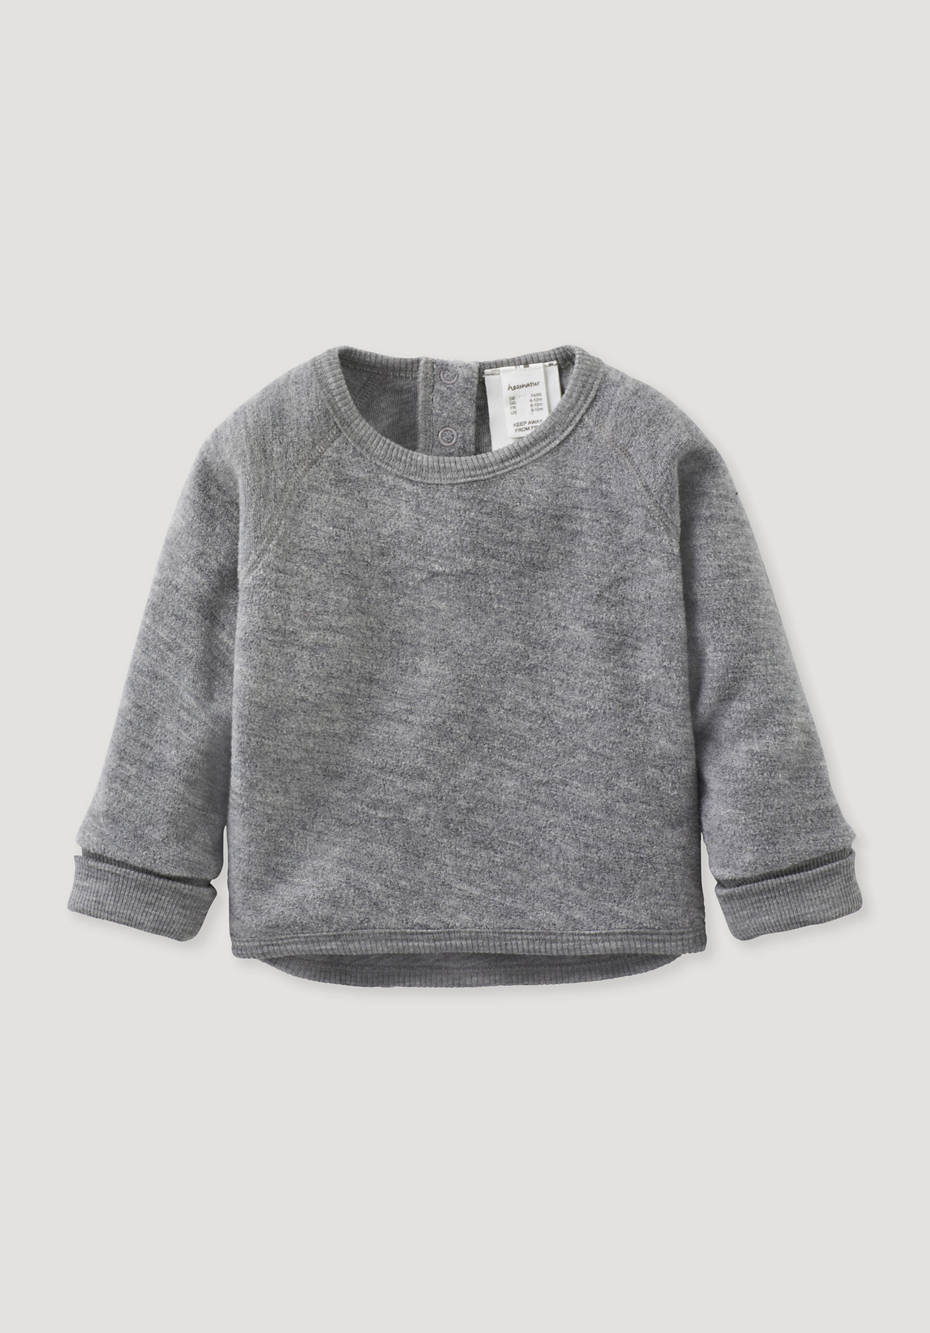 Regular wool terry sweatshirt made from pure organic merino wool